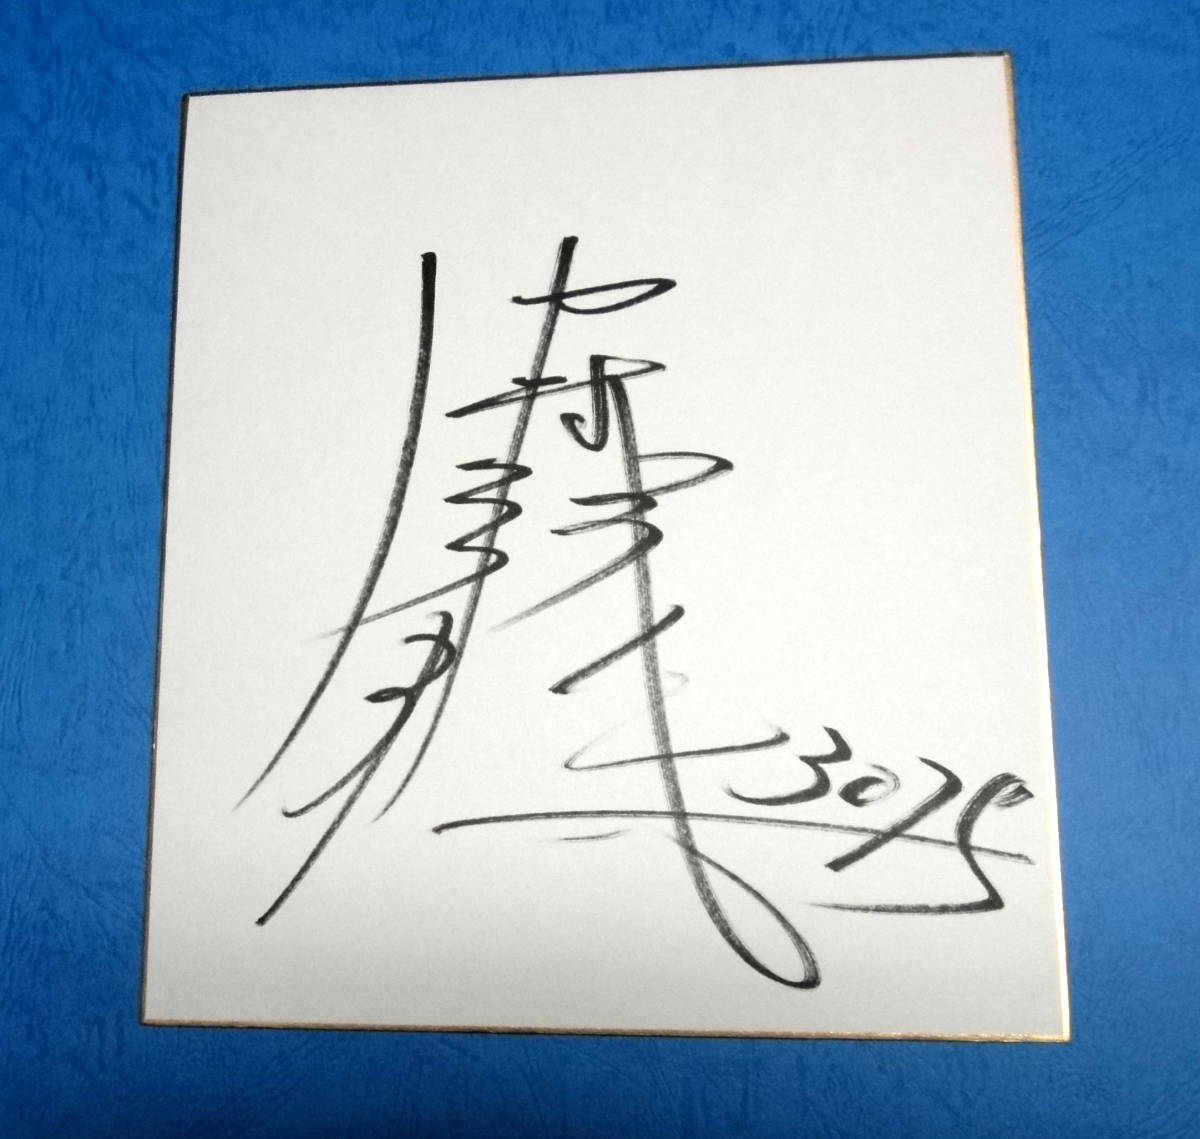 नाव दौड़ हिरोमासा नाकामुरा (सैतामा) हस्ताक्षरित रंगीन कागज और हस्ताक्षरित टी-शर्ट नाव दौड़ स्मारक विजेता!!, खेल, आराम, नौका दौड़, अन्य